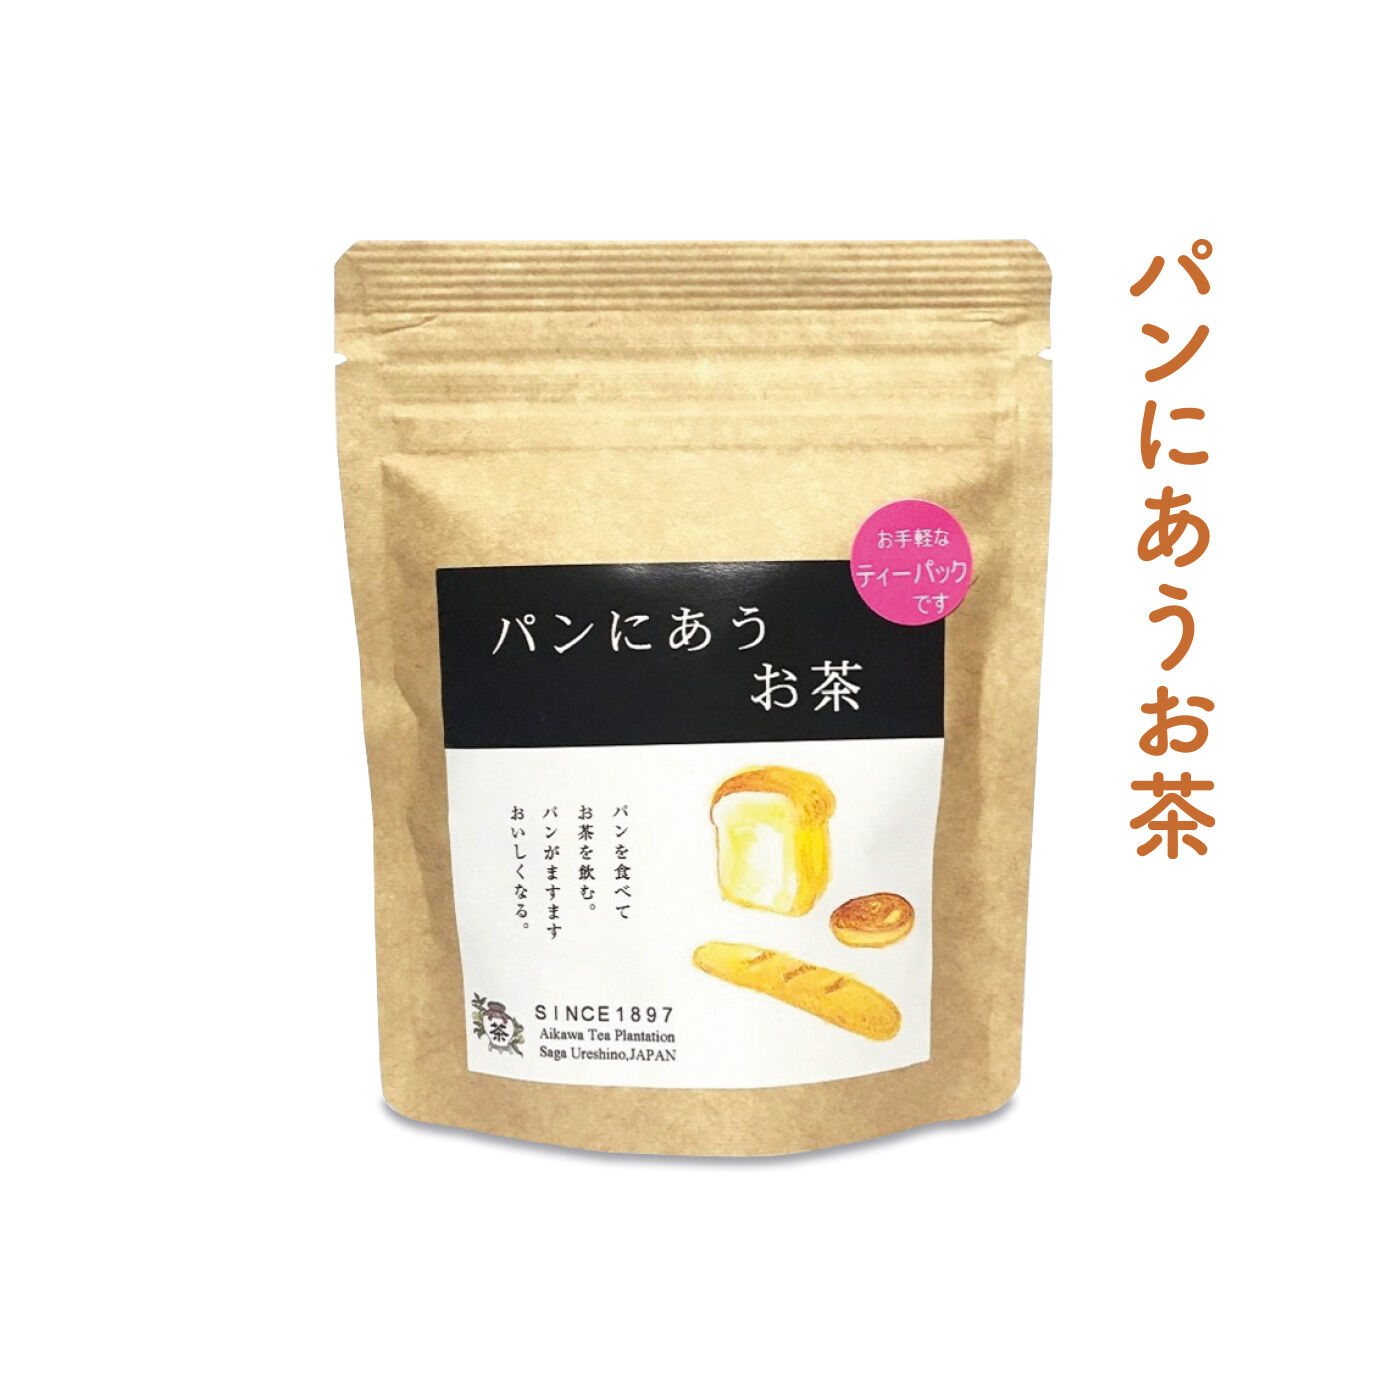 FELISSIMO PARTNERS|佐賀 相川製茶舗 いろんな味わいが楽しい うれしの茶の会（6回予約）|さっぱり。モーニングにおすすめ。